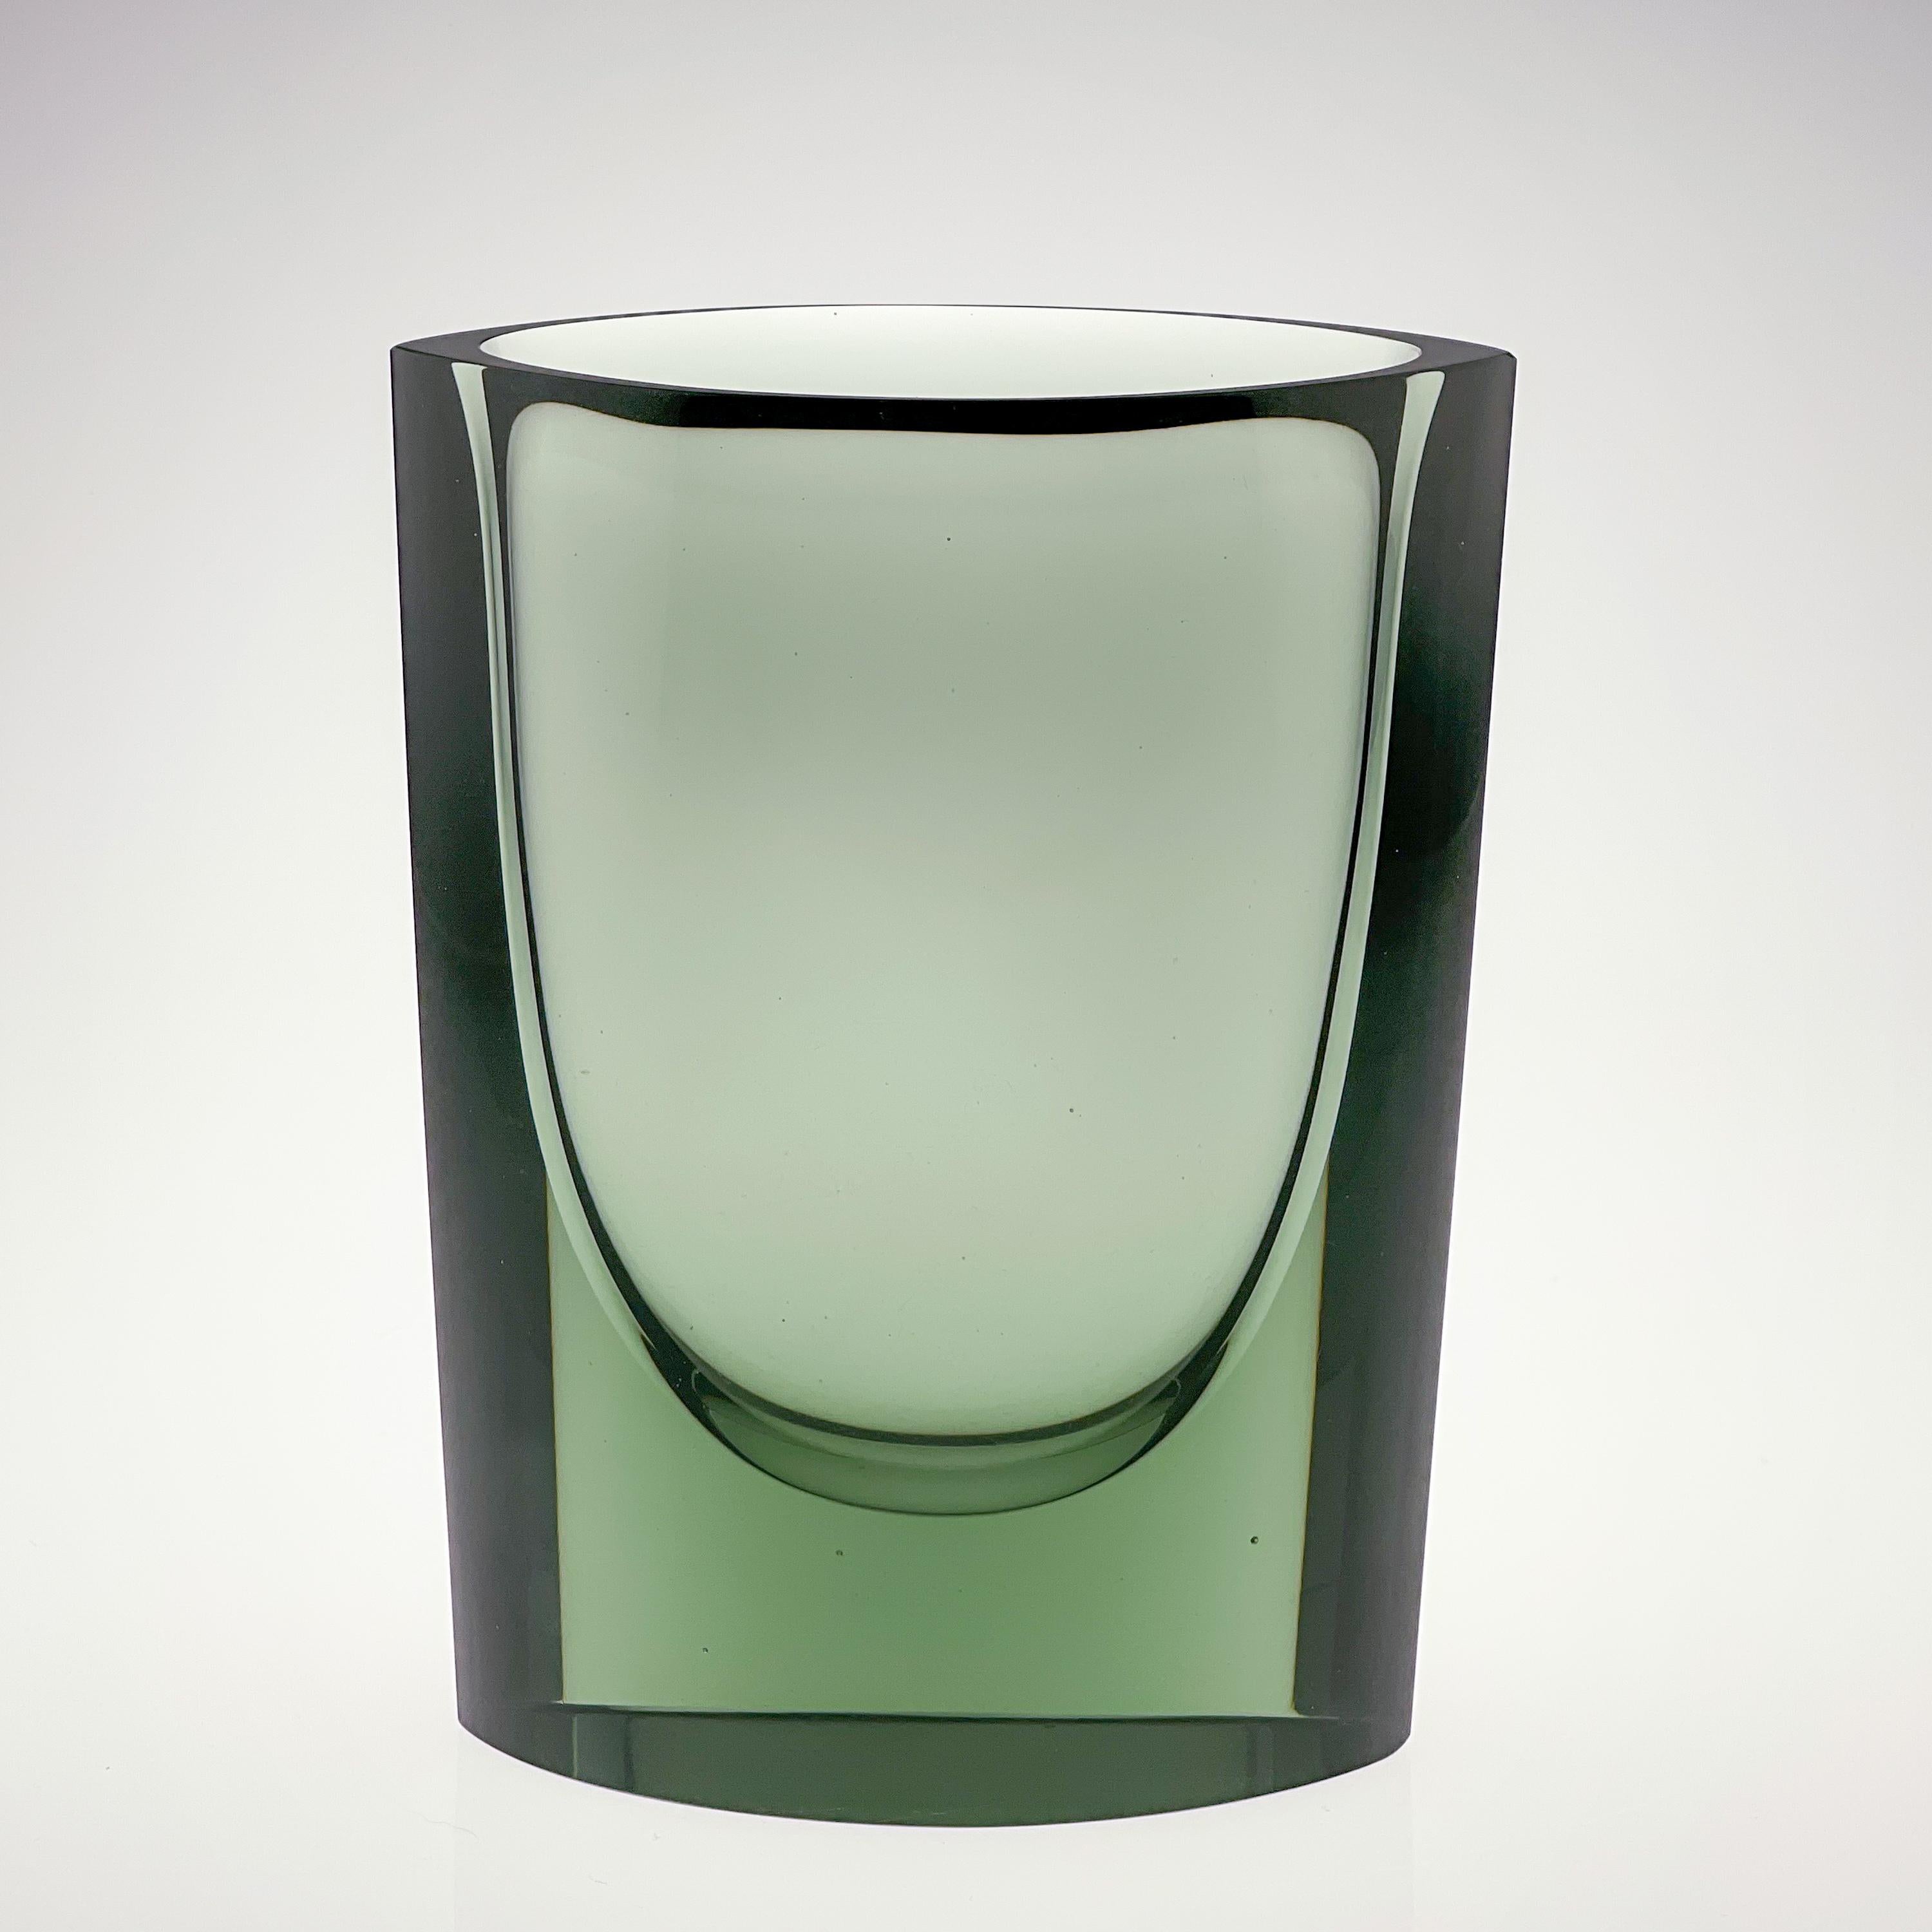 Kaj Franck, Green Glass Art-Object, Model N 407, Nuutajärvi-Notsjö, Finland 1967 7